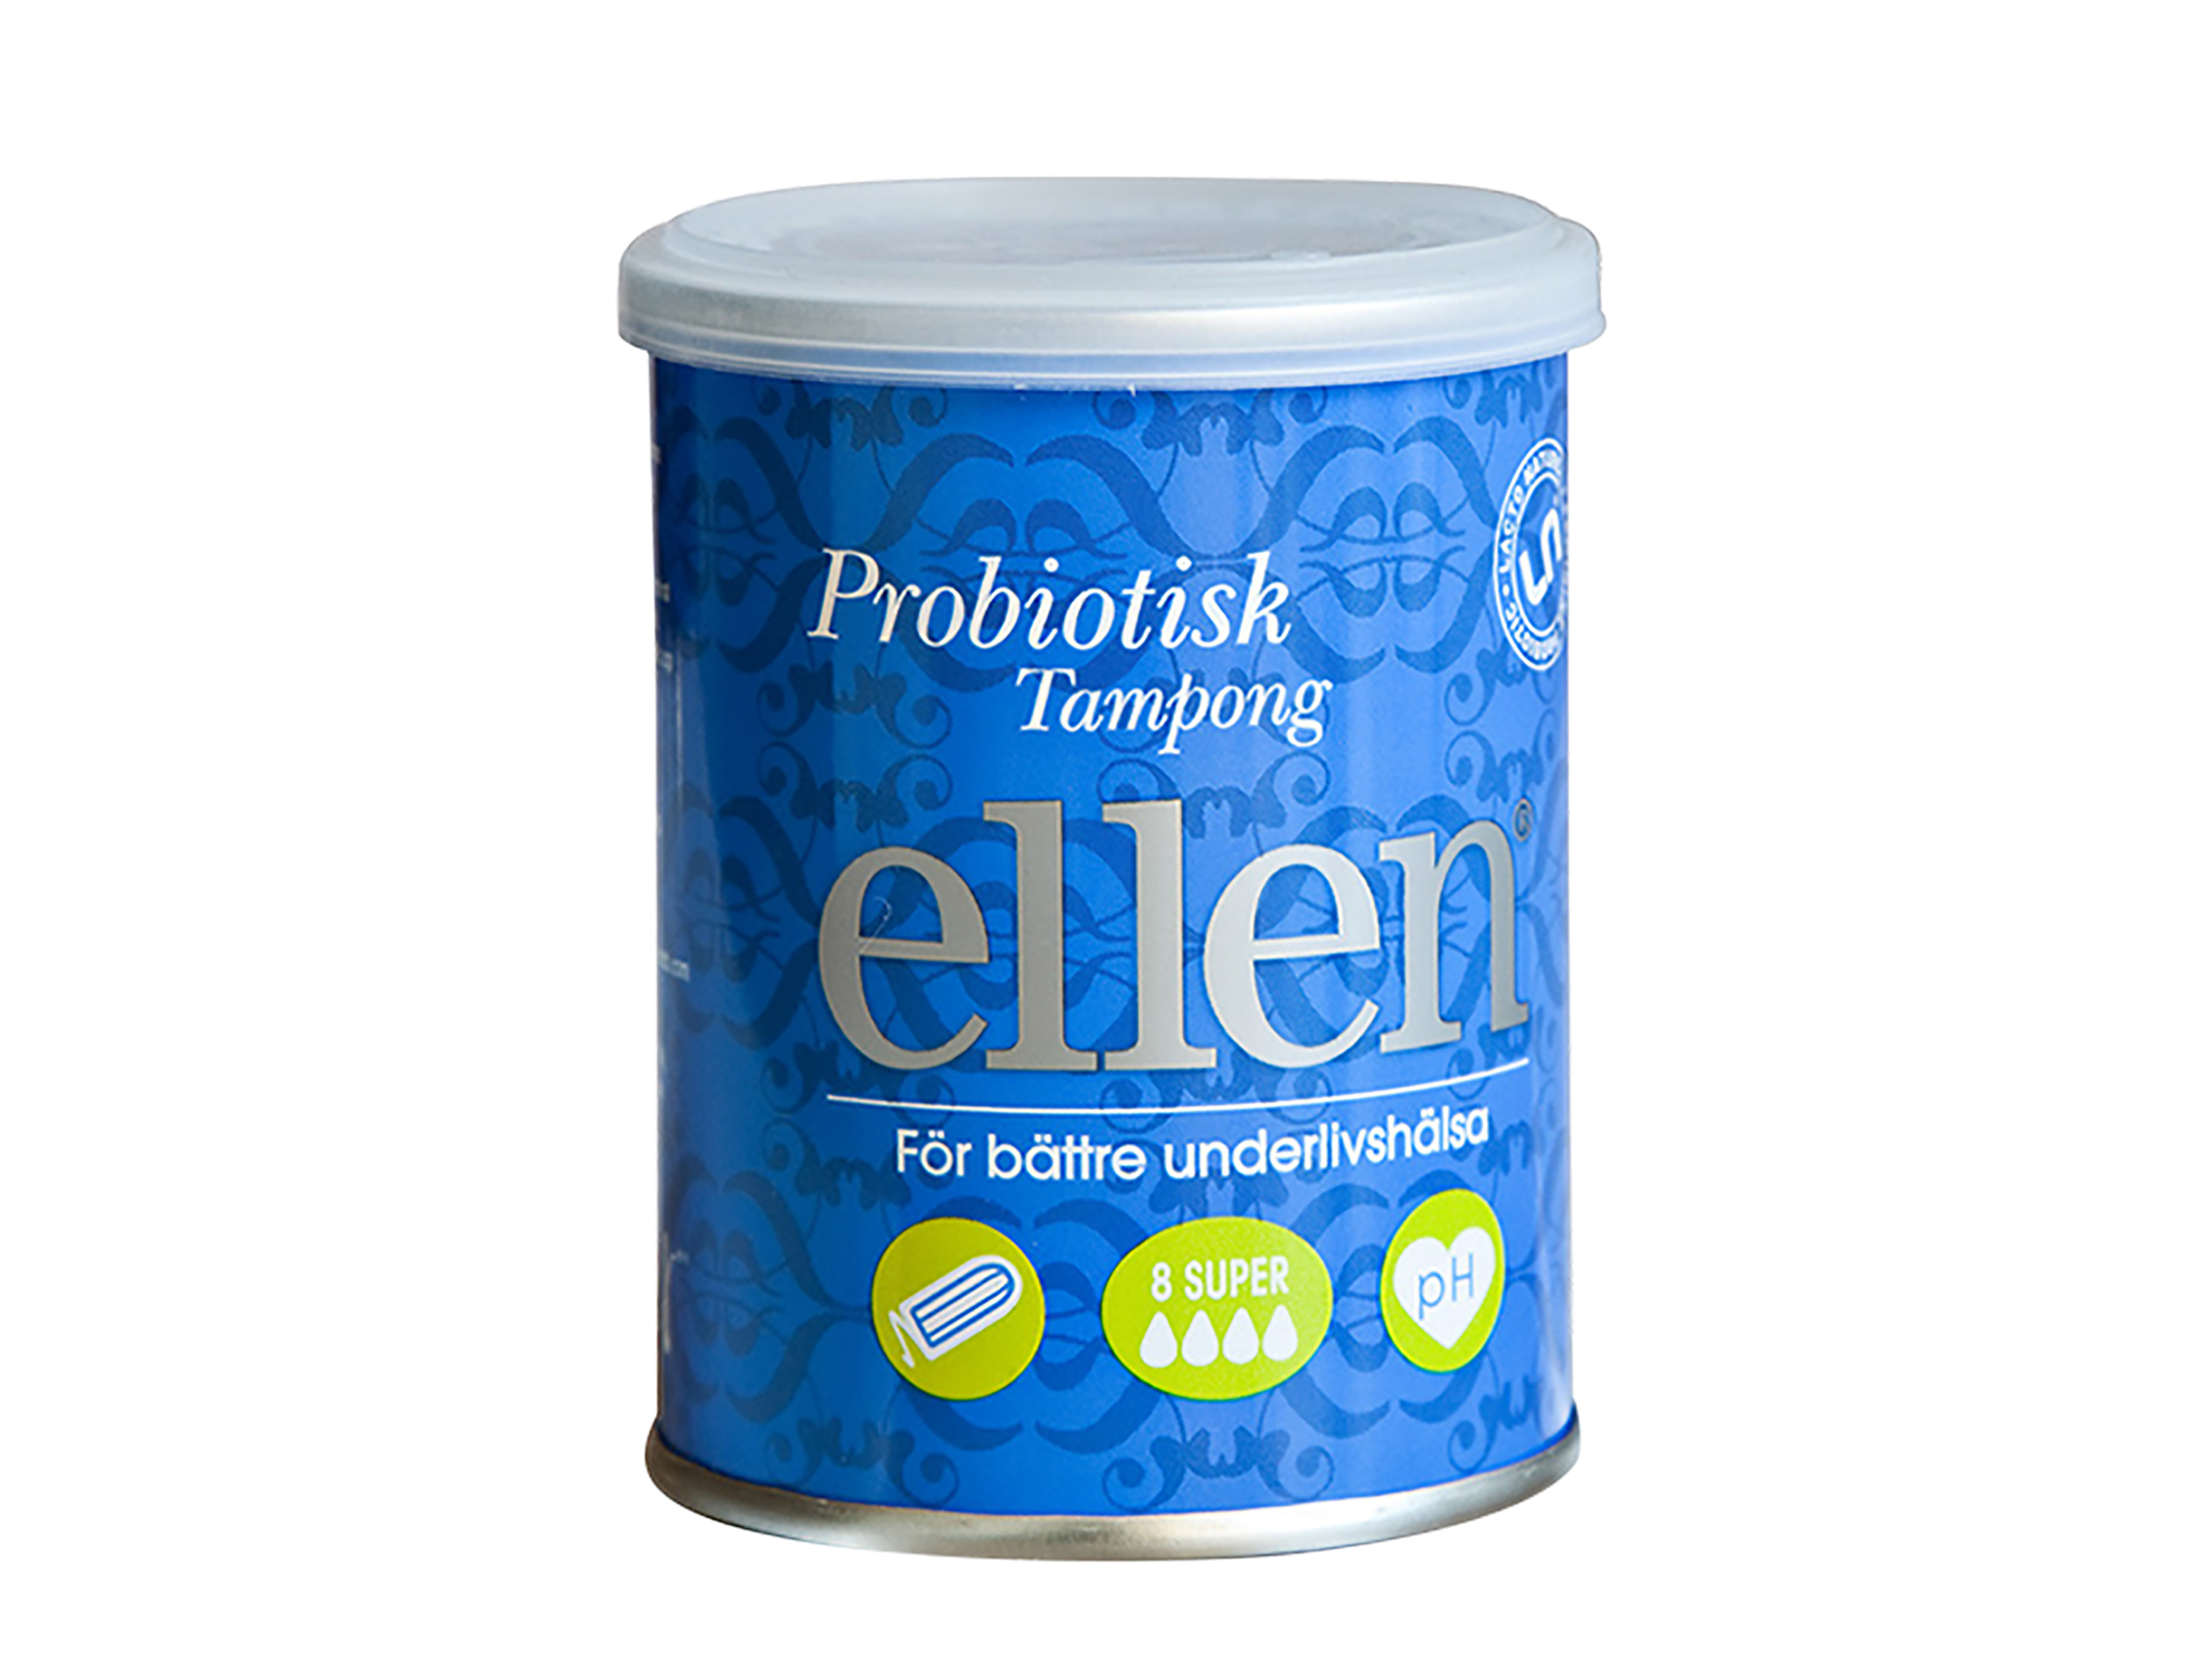 Ellen Ellen Probiotisk tampong super, 8 stk